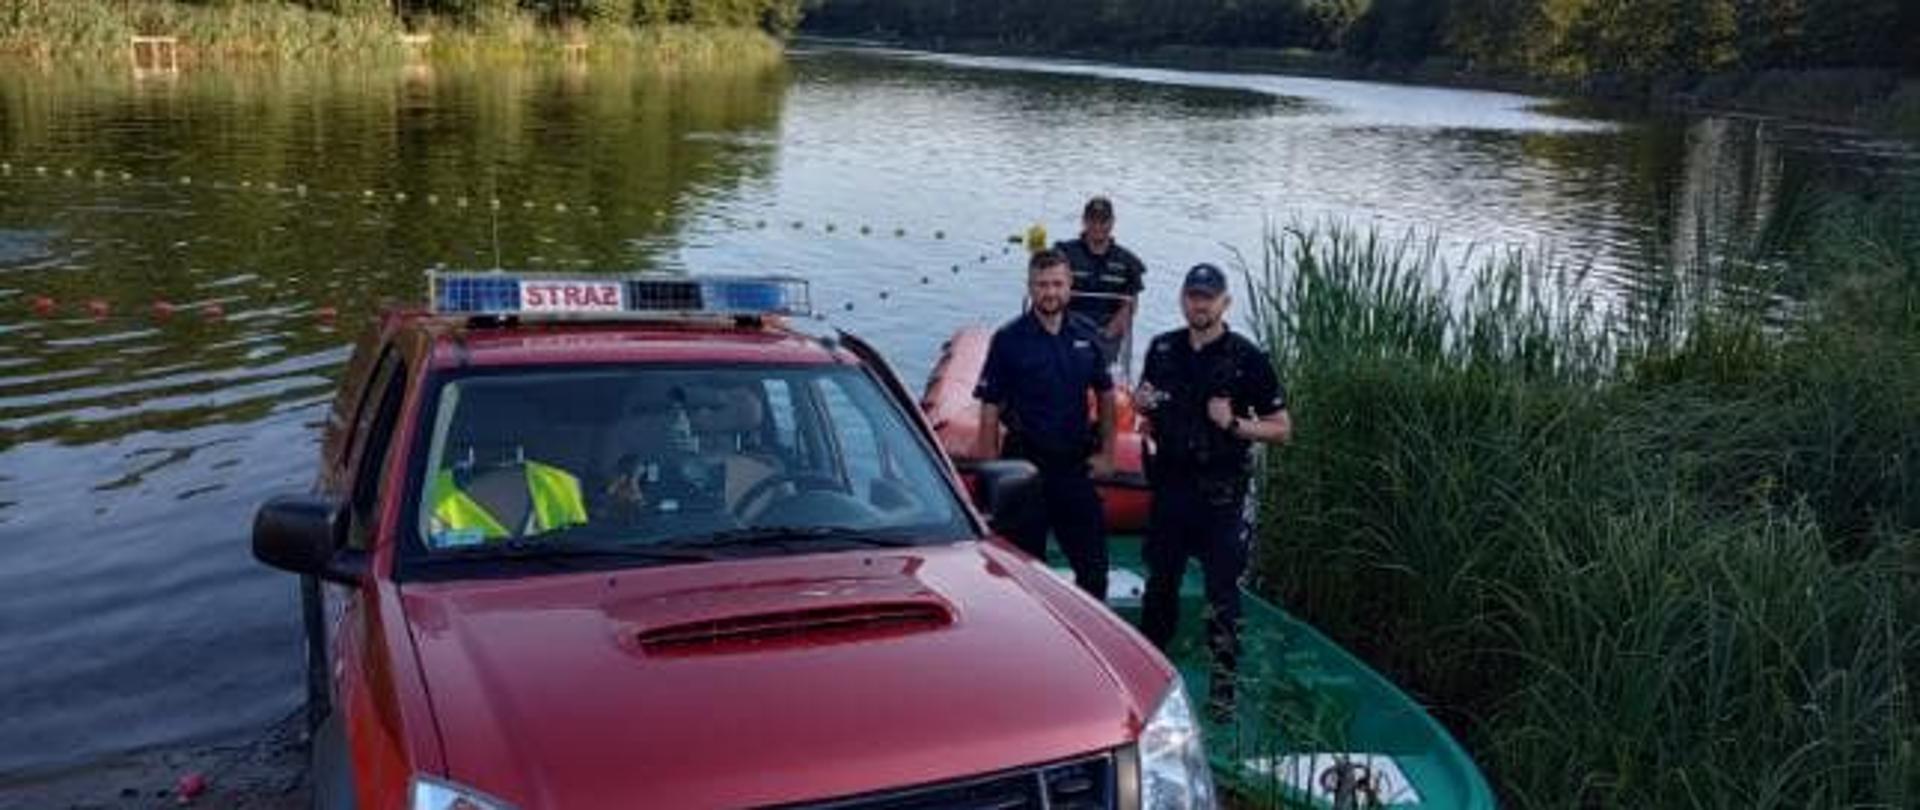 Strażacy z Jednostki Ratowniczo – Gaśniczej w Obornikach wraz z funkcjonariuszami z Komendy Powiatowej Policji w Obornikach przeprowadzili wspólne patrole akwenów na terenie gminy Rogoźno.